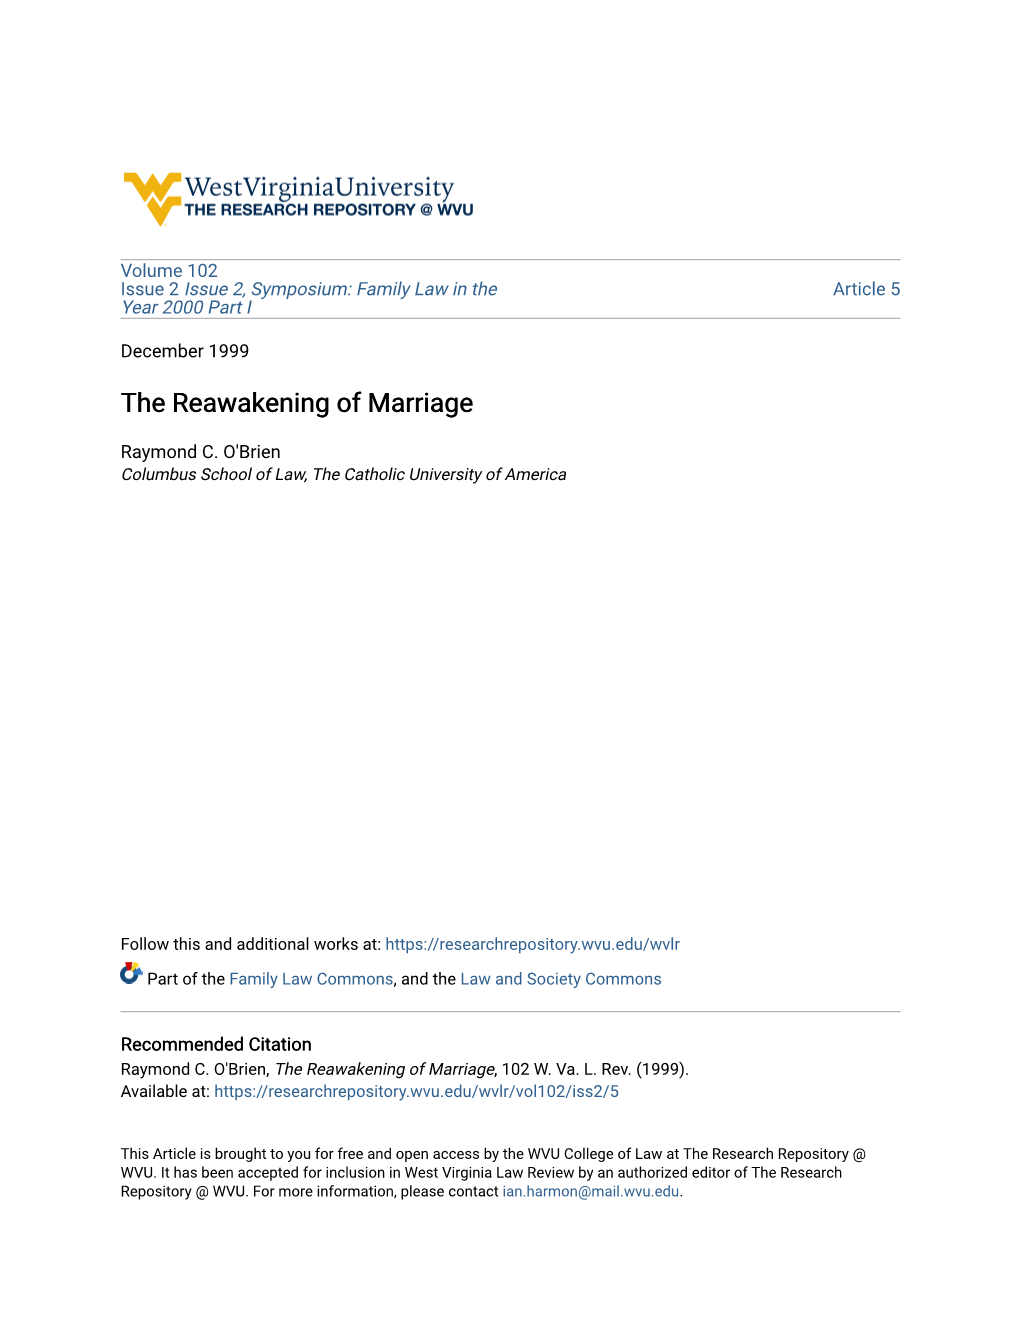 The Reawakening of Marriage